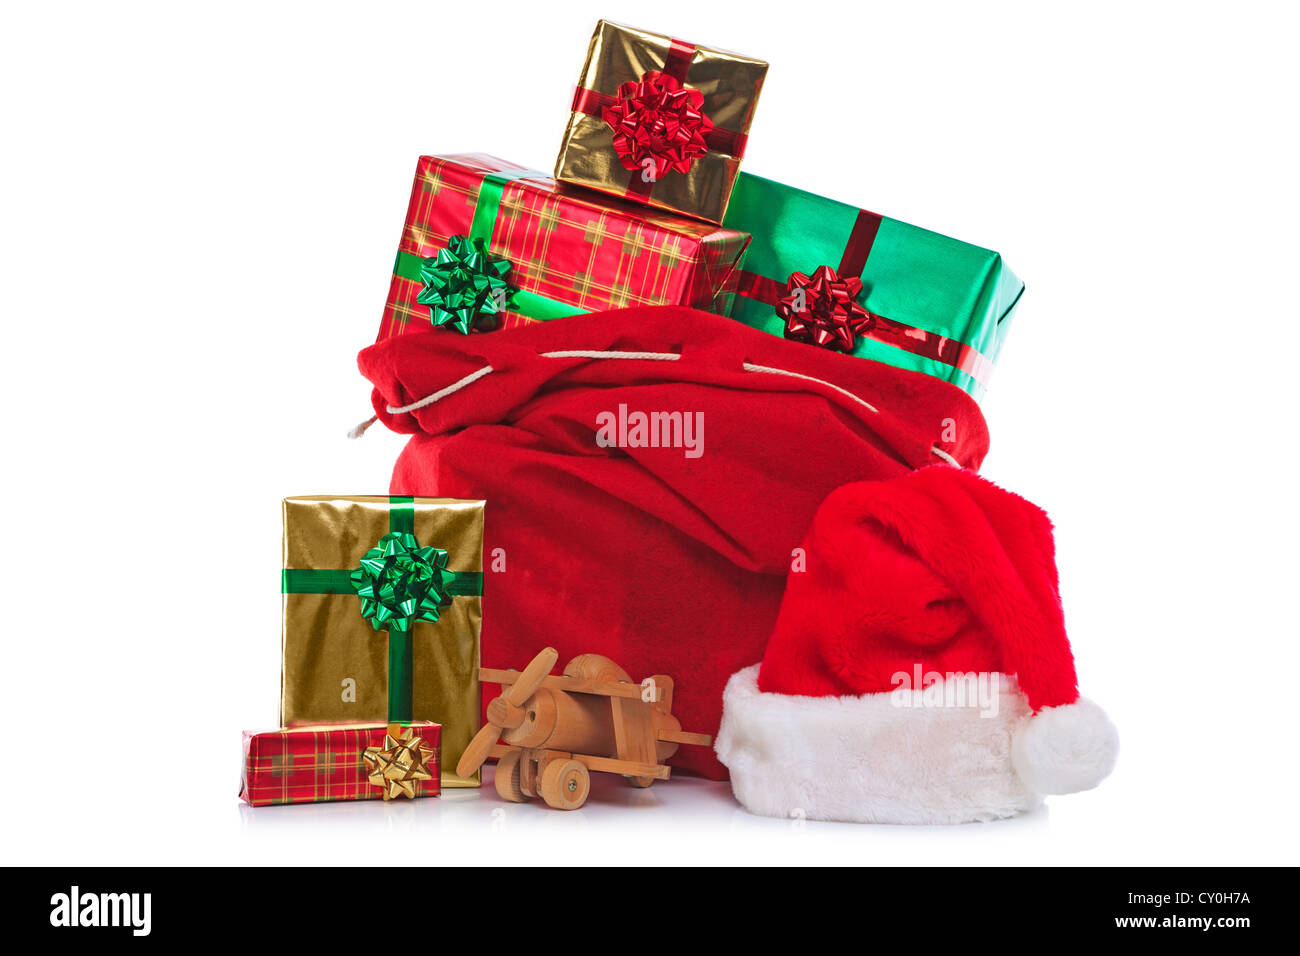 Foto von einem roten Weihnachtsmann-Mütze und Sack voller Geschenk verpackt präsentiert und Spielzeug, isoliert auf einem weißen Hintergrund. Stockfoto